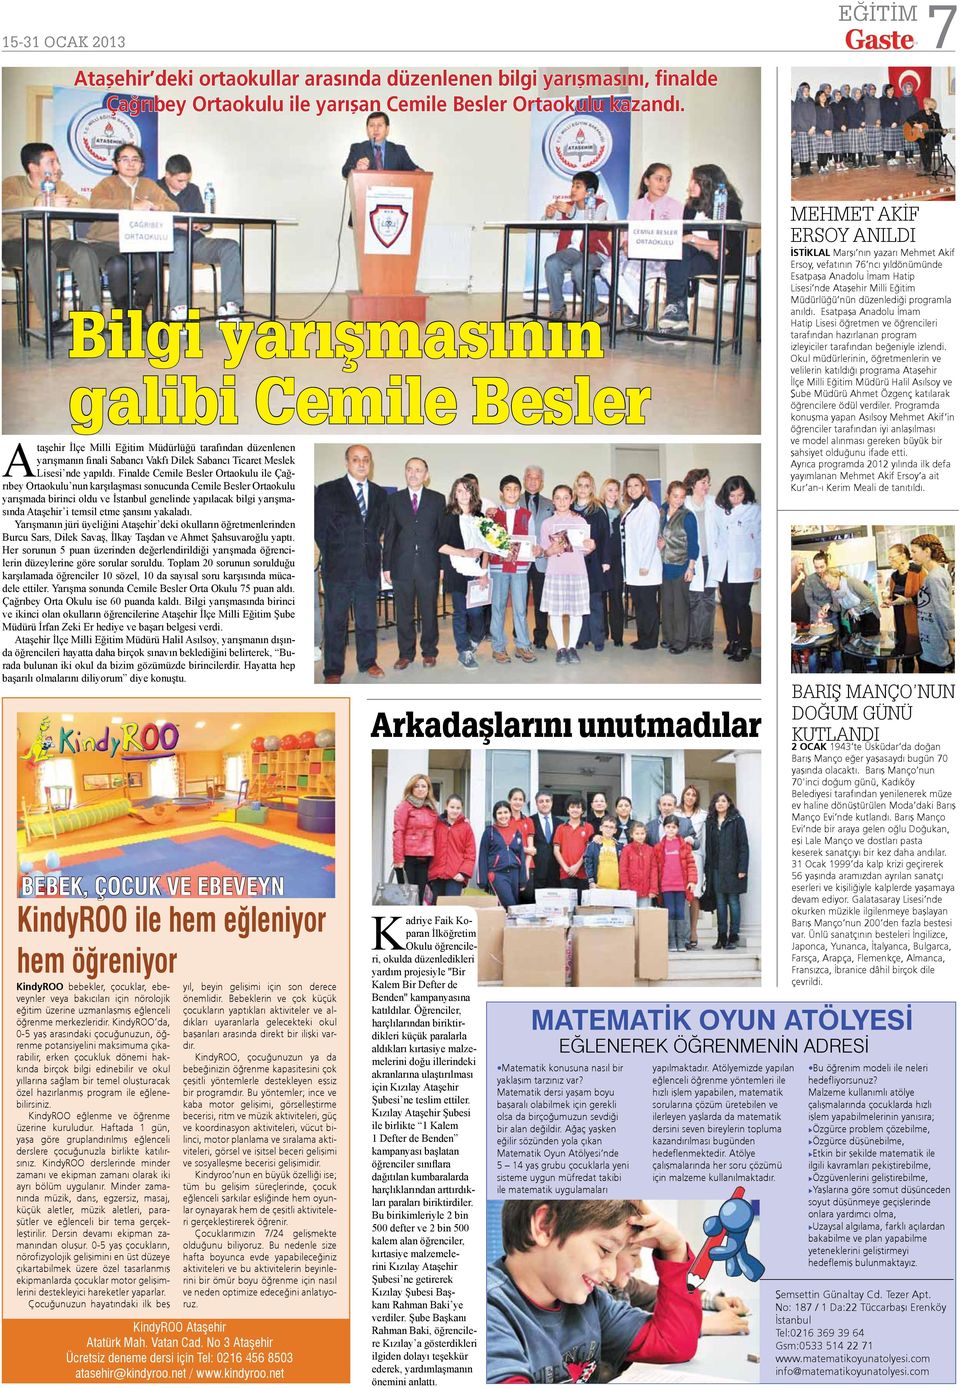 Finalde Cemile Besler Ortaokulu ile Çağrıbey Ortaokulu nun karşılaşması sonucunda Cemile Besler Ortaokulu yarışmada birinci oldu ve İstanbul genelinde yapılacak bilgi yarışmasında Ataşehir i temsil